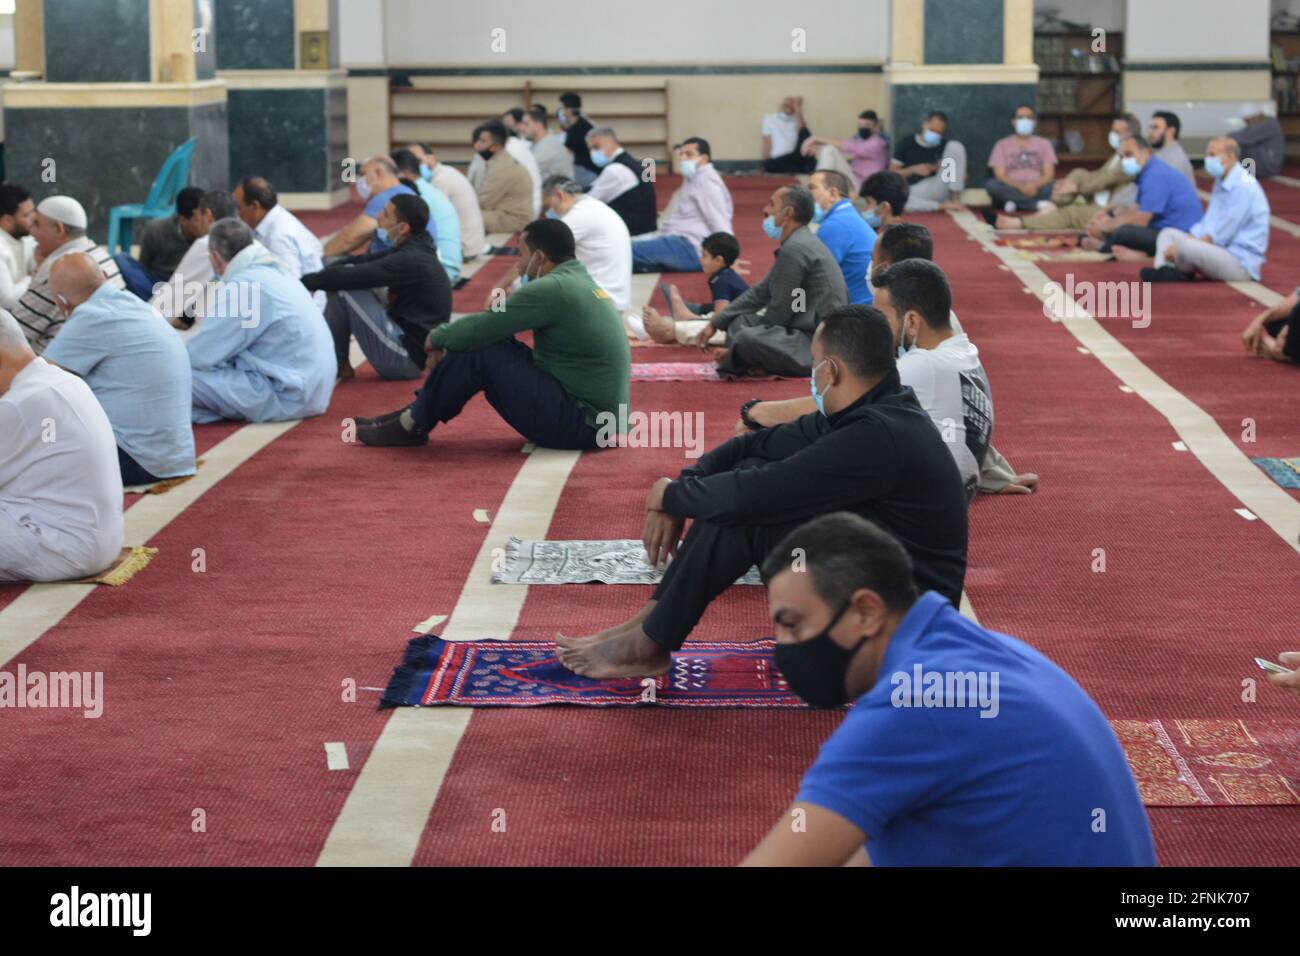 Les musulmans exécutent les premières prières d'Eid Al-Fitr dans les mosquées de Covid-19 l'ère de la pandémie dans le cadre des récentes mesures d'innocuité de l'anti-coronavirus en grande taille mosquées Banque D'Images